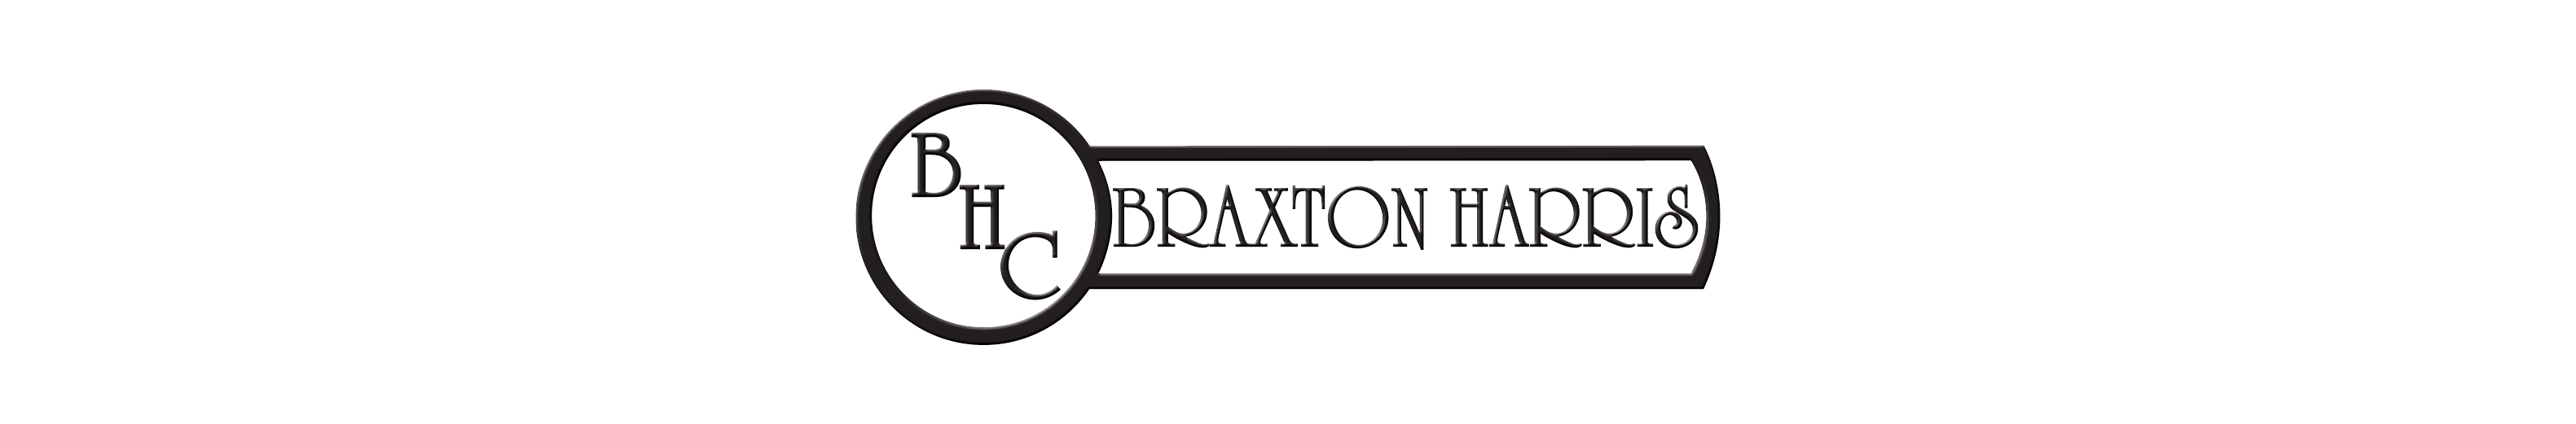 Braxton Harris Company Logo